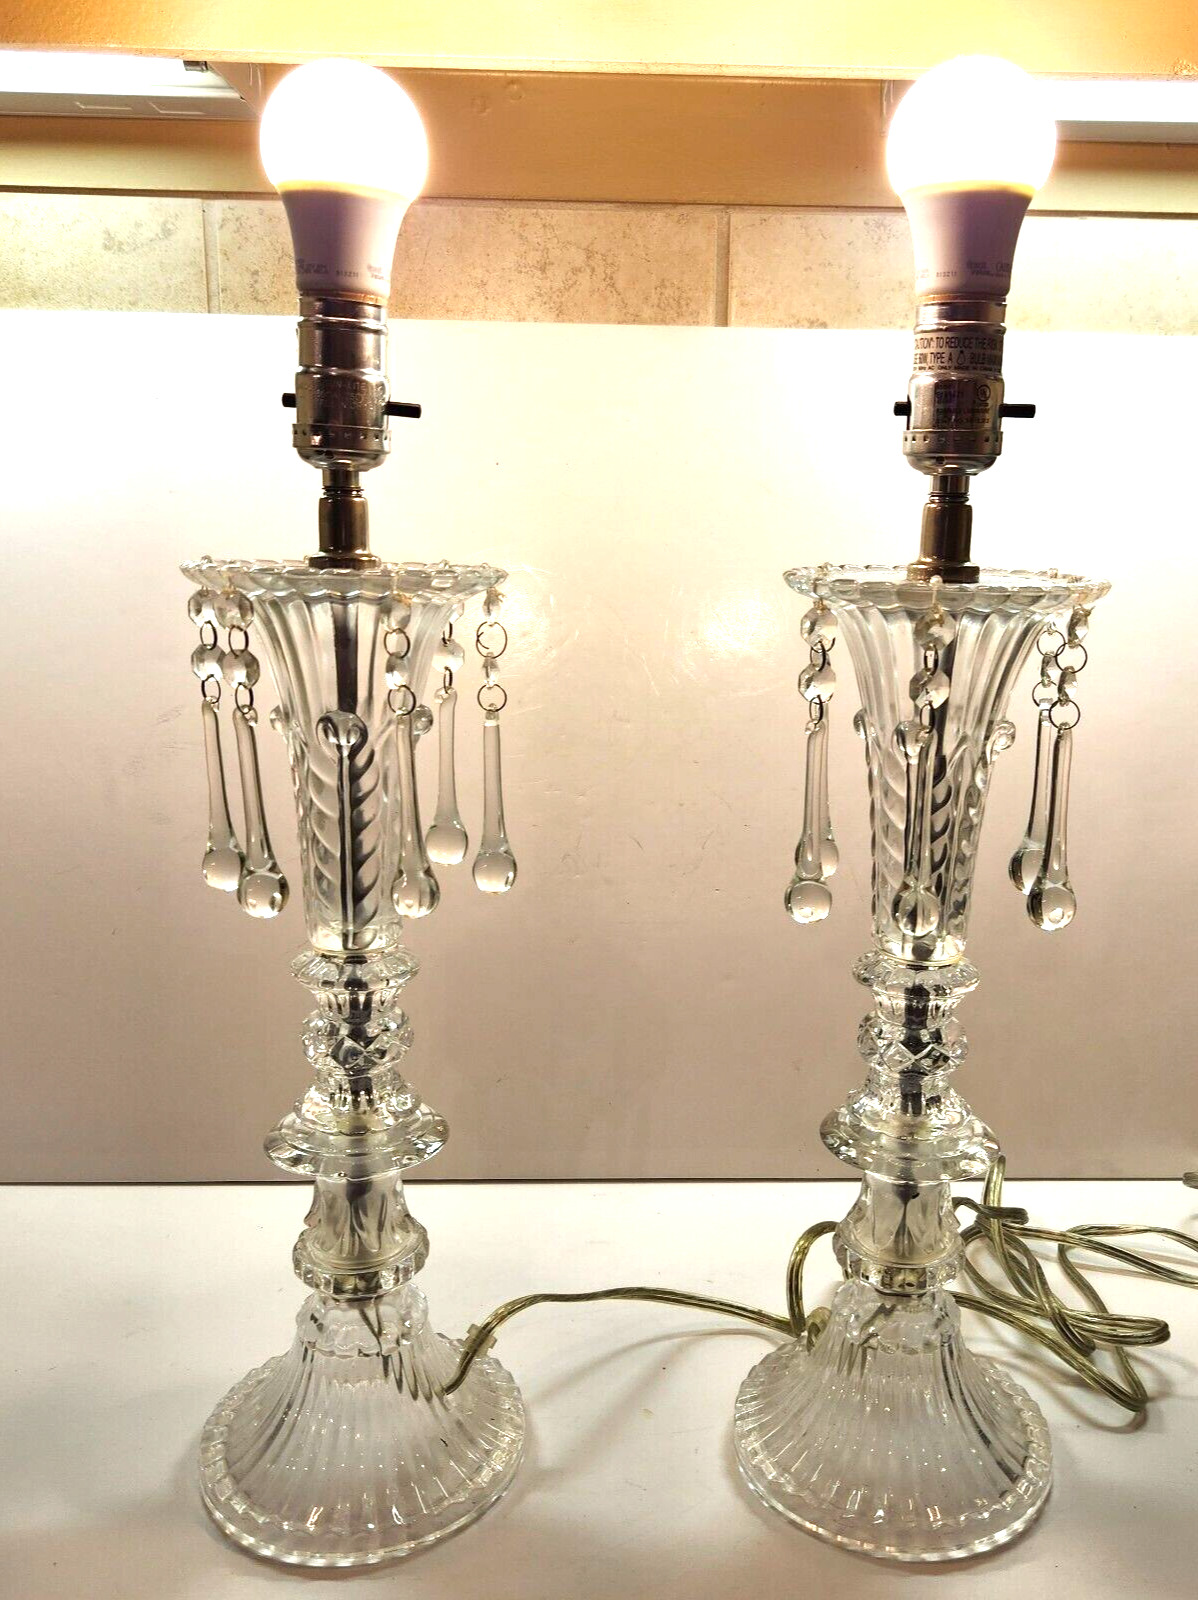 Vintage 2004 CN Burman Co Set of 2 Glass Chandelier Table Lamps Works 60 Watt